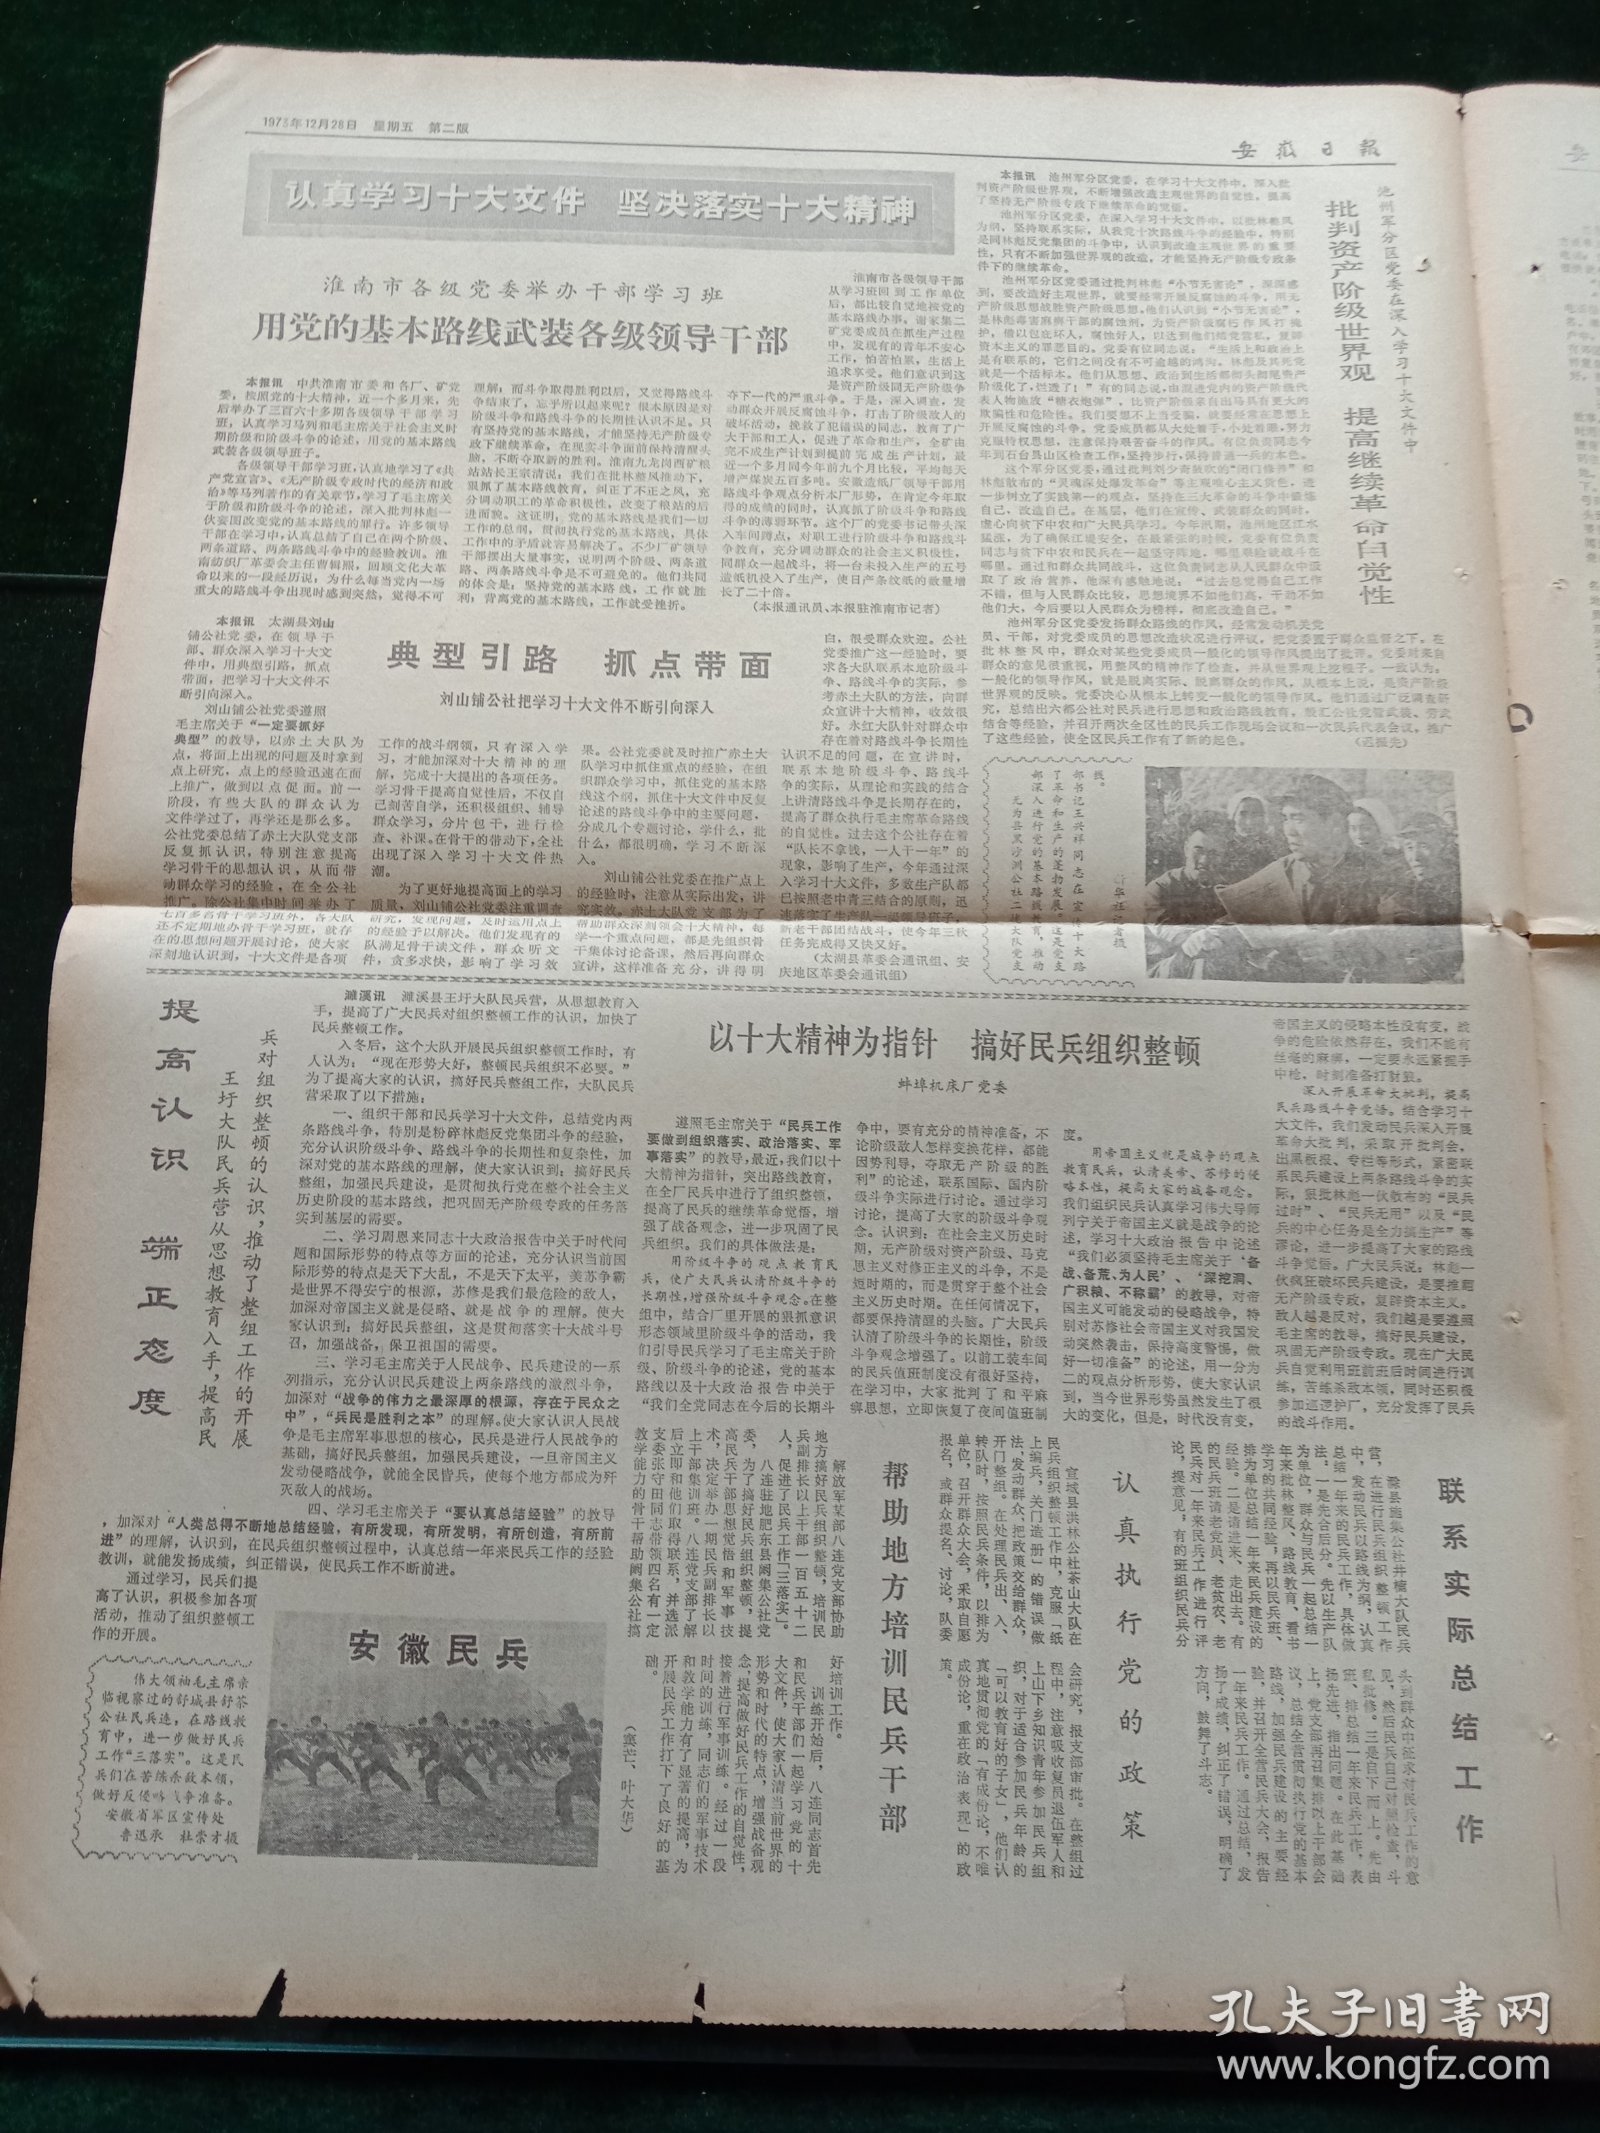 安徽日报，1973年12月28日详情见图，对开四版。